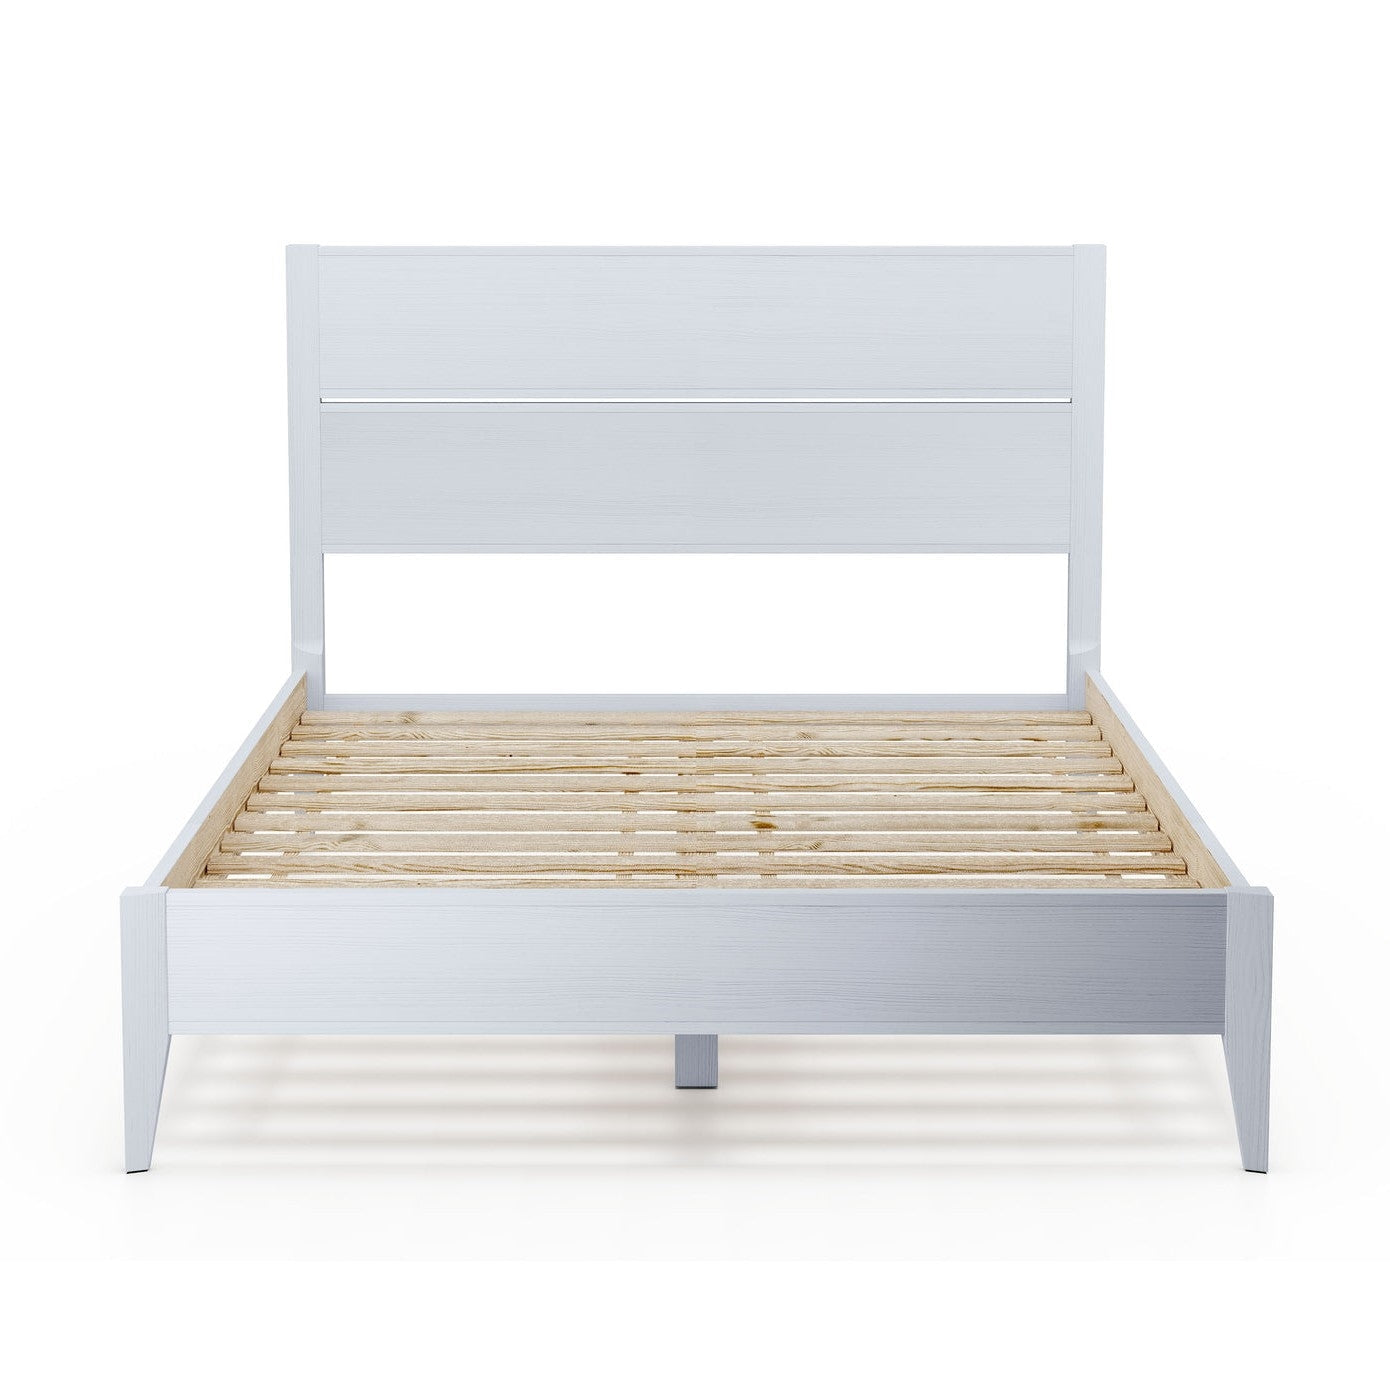 Bedroom > Bed Frames > Platform Beds - Queen Size Rustic White Mid Century Slatted Platform Bed